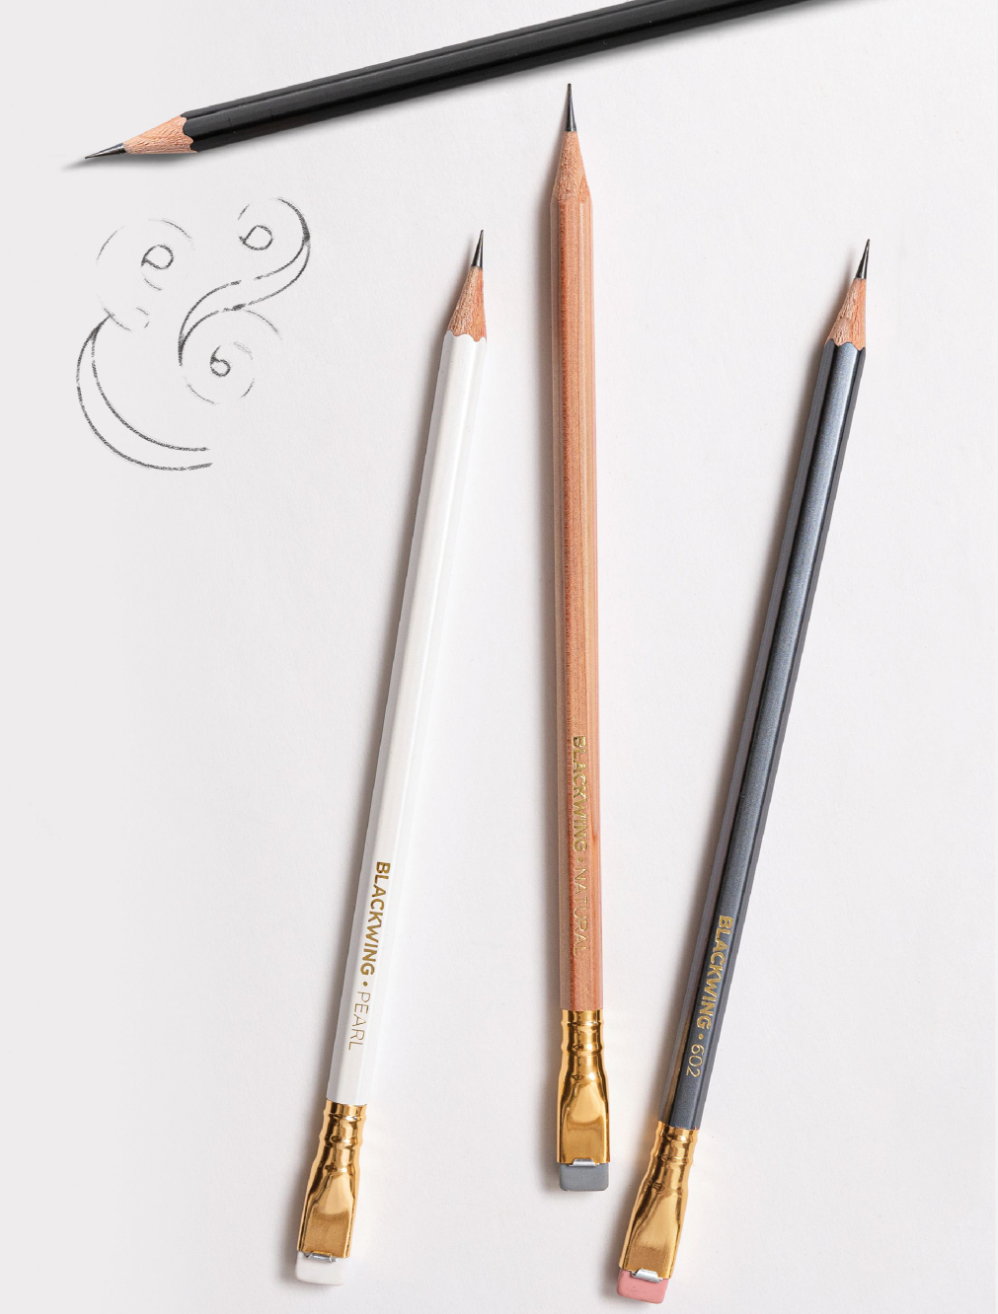 Blackwing - 602 – Pencil per unit